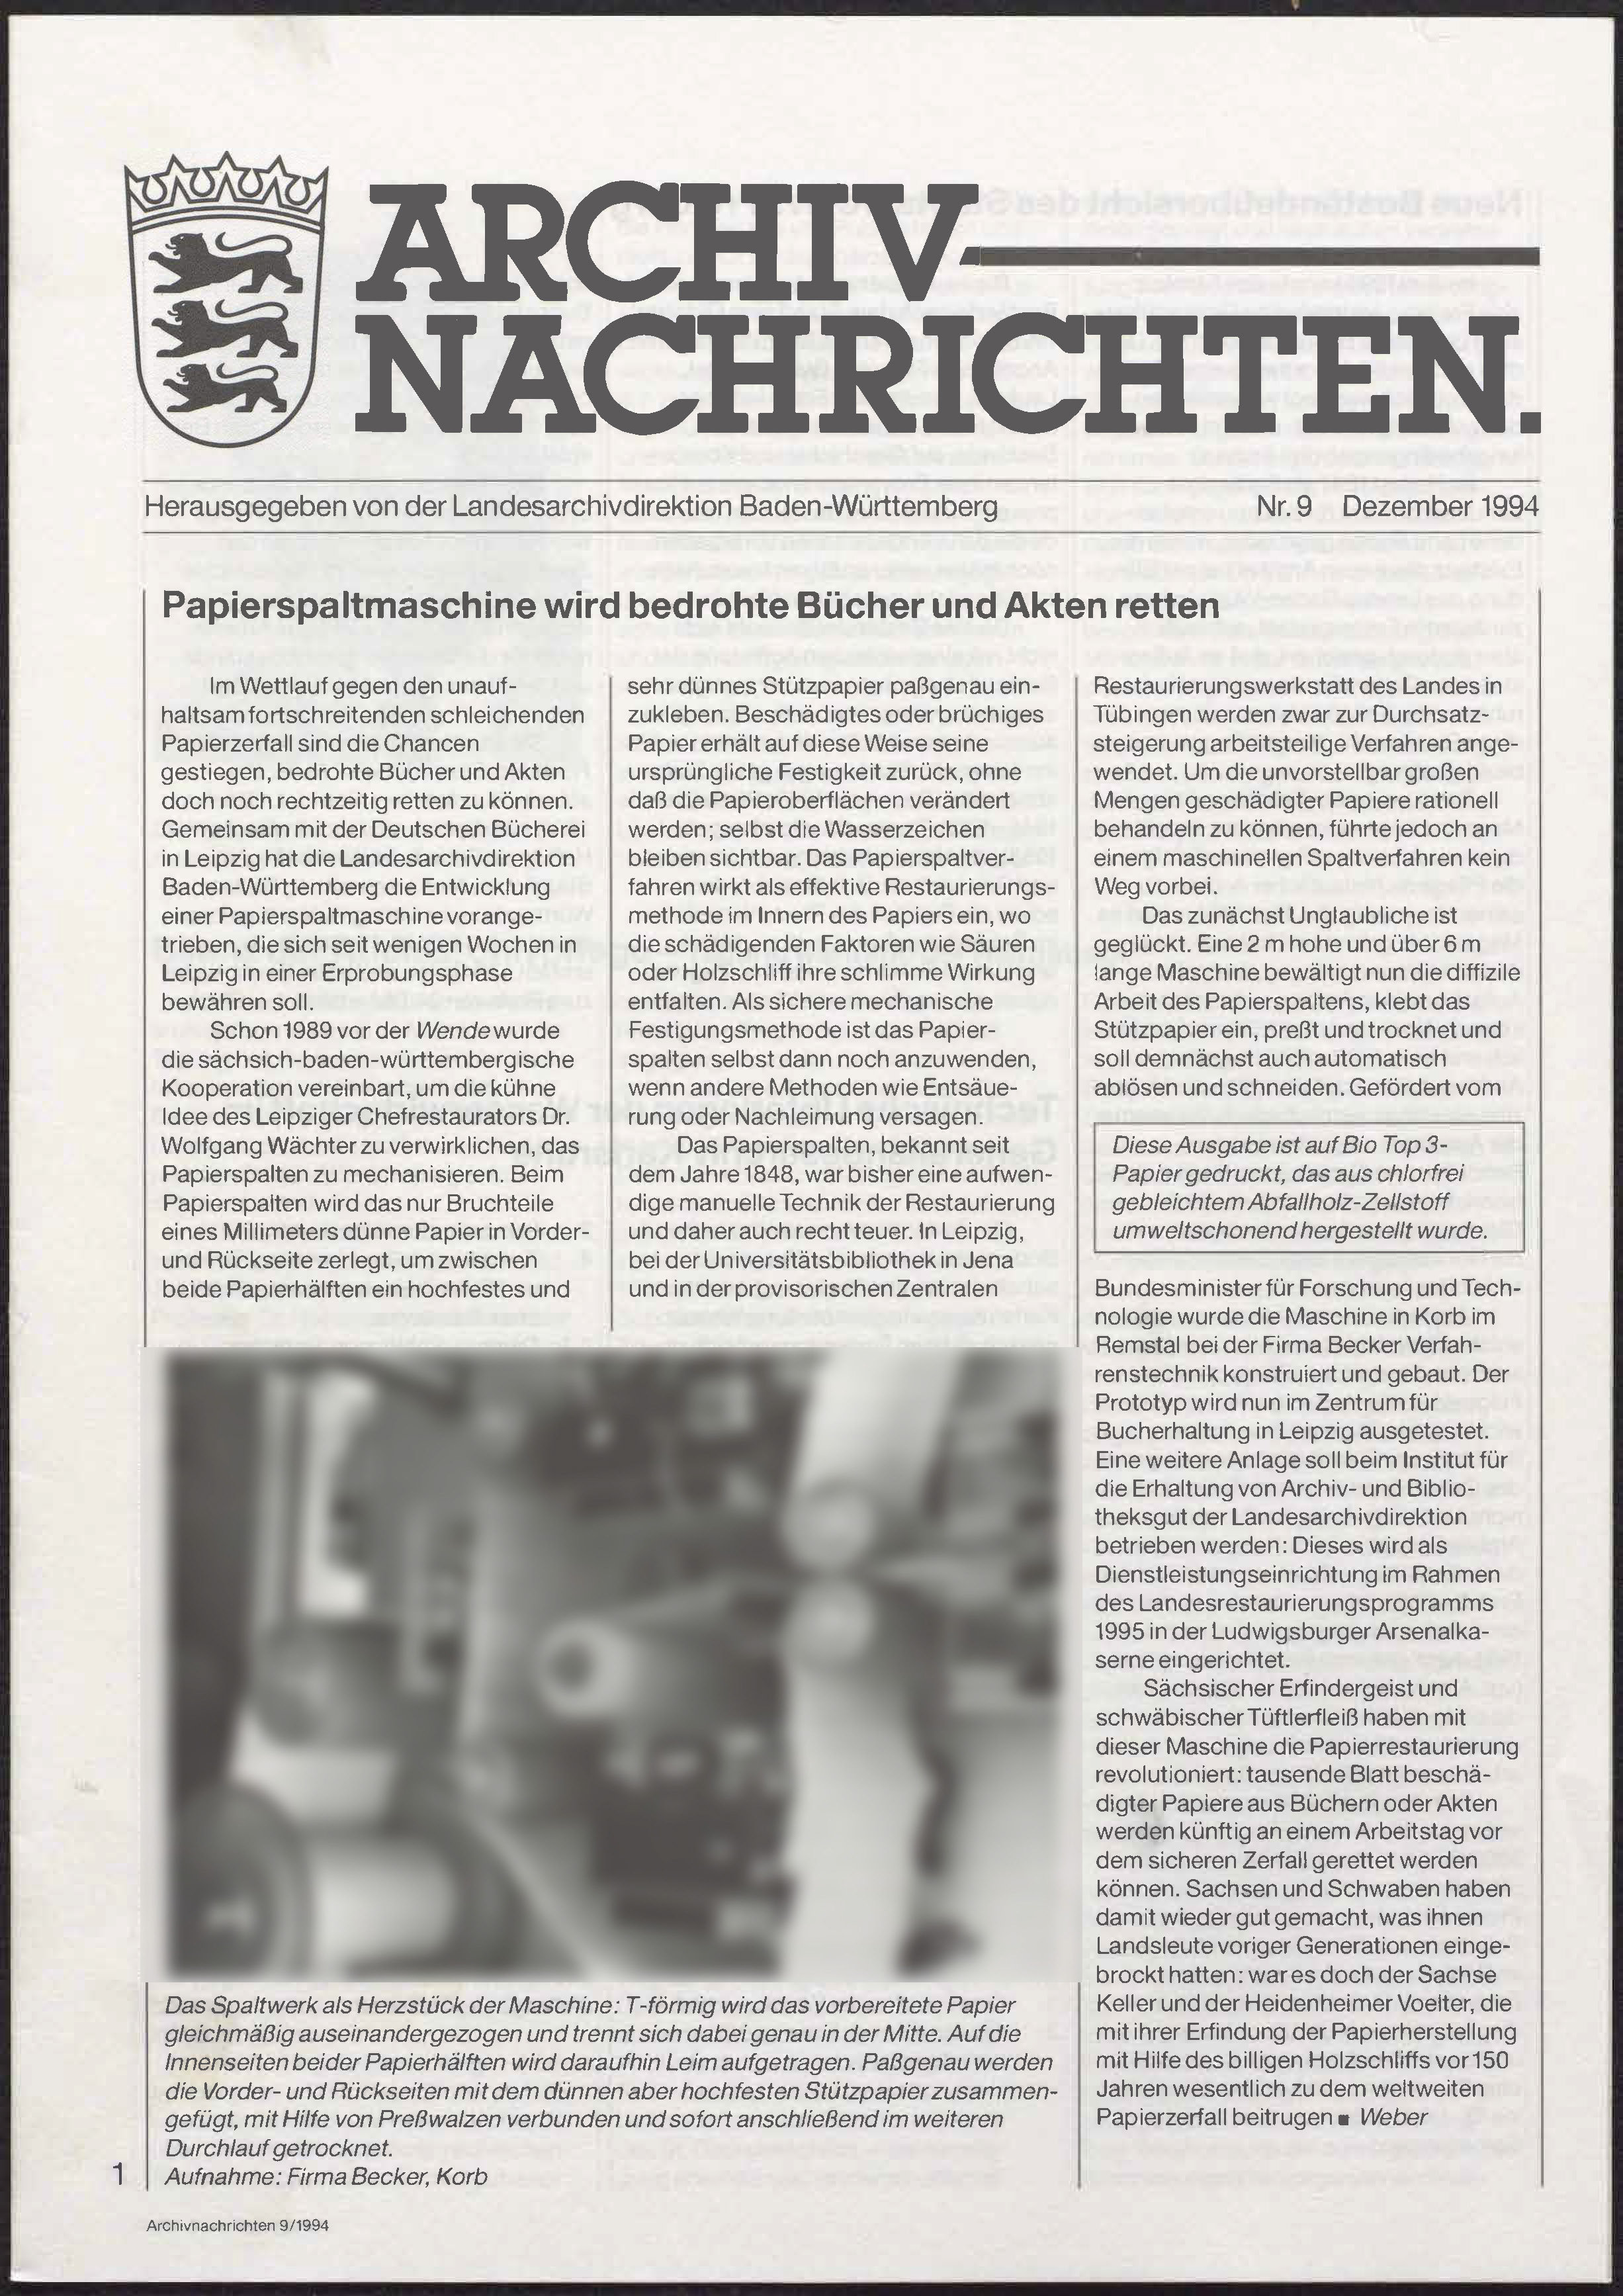                     Ansehen Nr. 9 (1994): Archivnachrichten
                